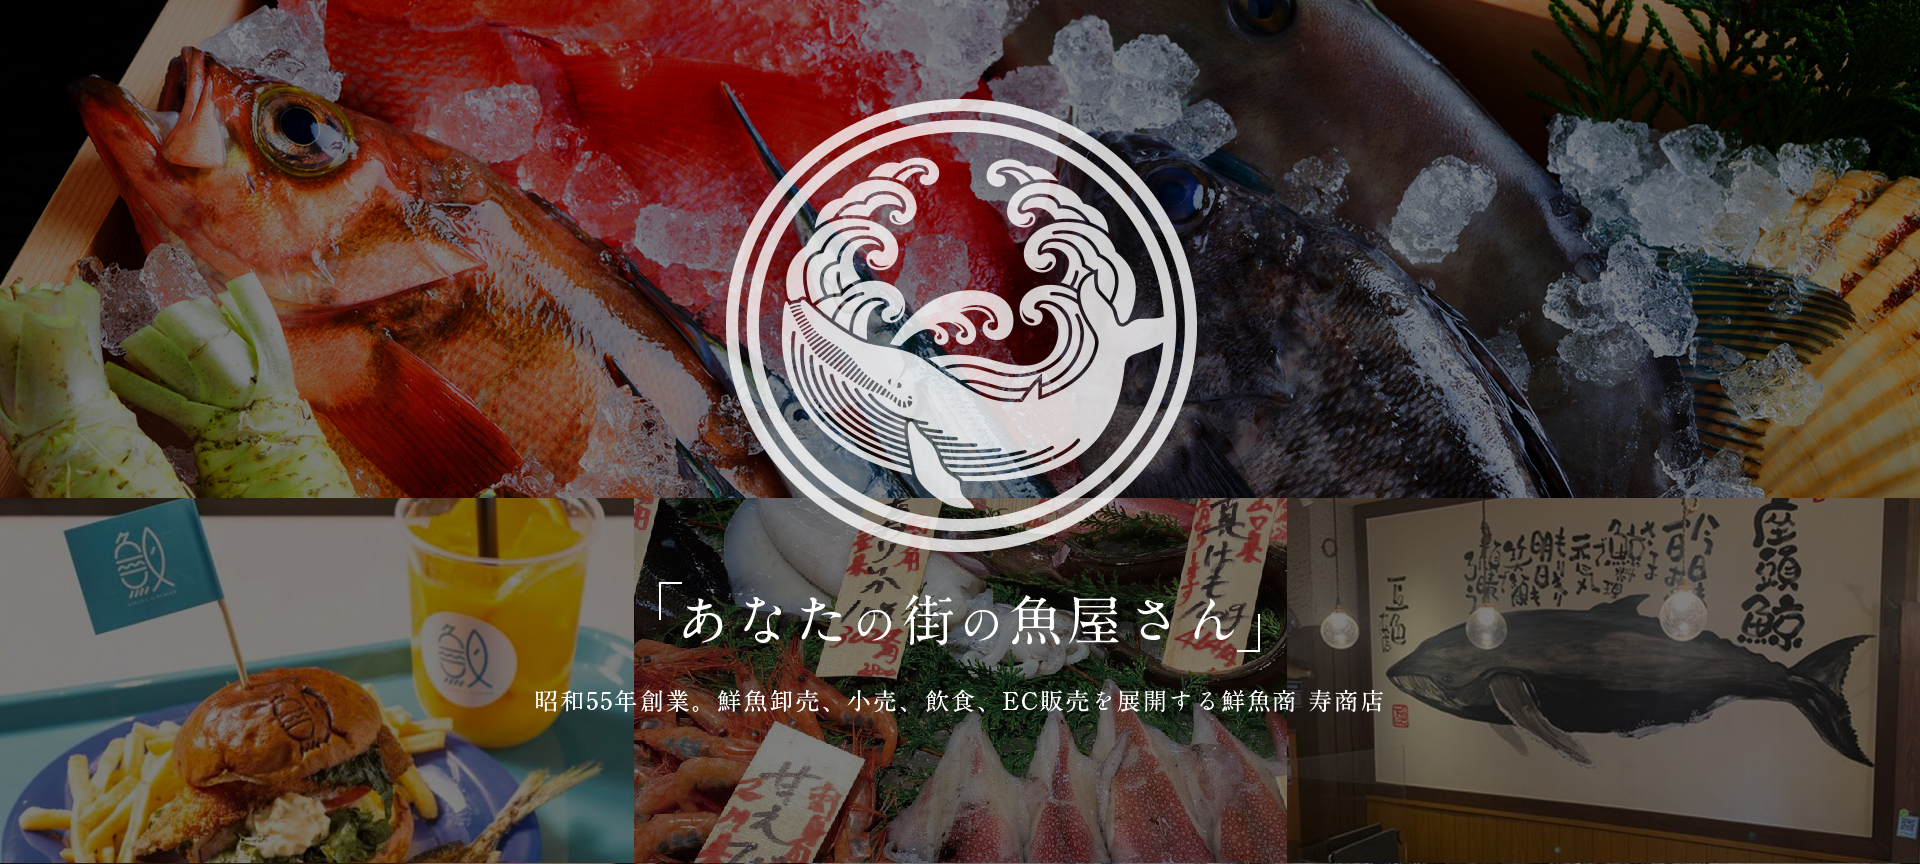 あなたの街の魚屋さん昭和55年創業。鮮魚卸売、小売、飲食、EC販売を展開する鮮魚商 寿商店